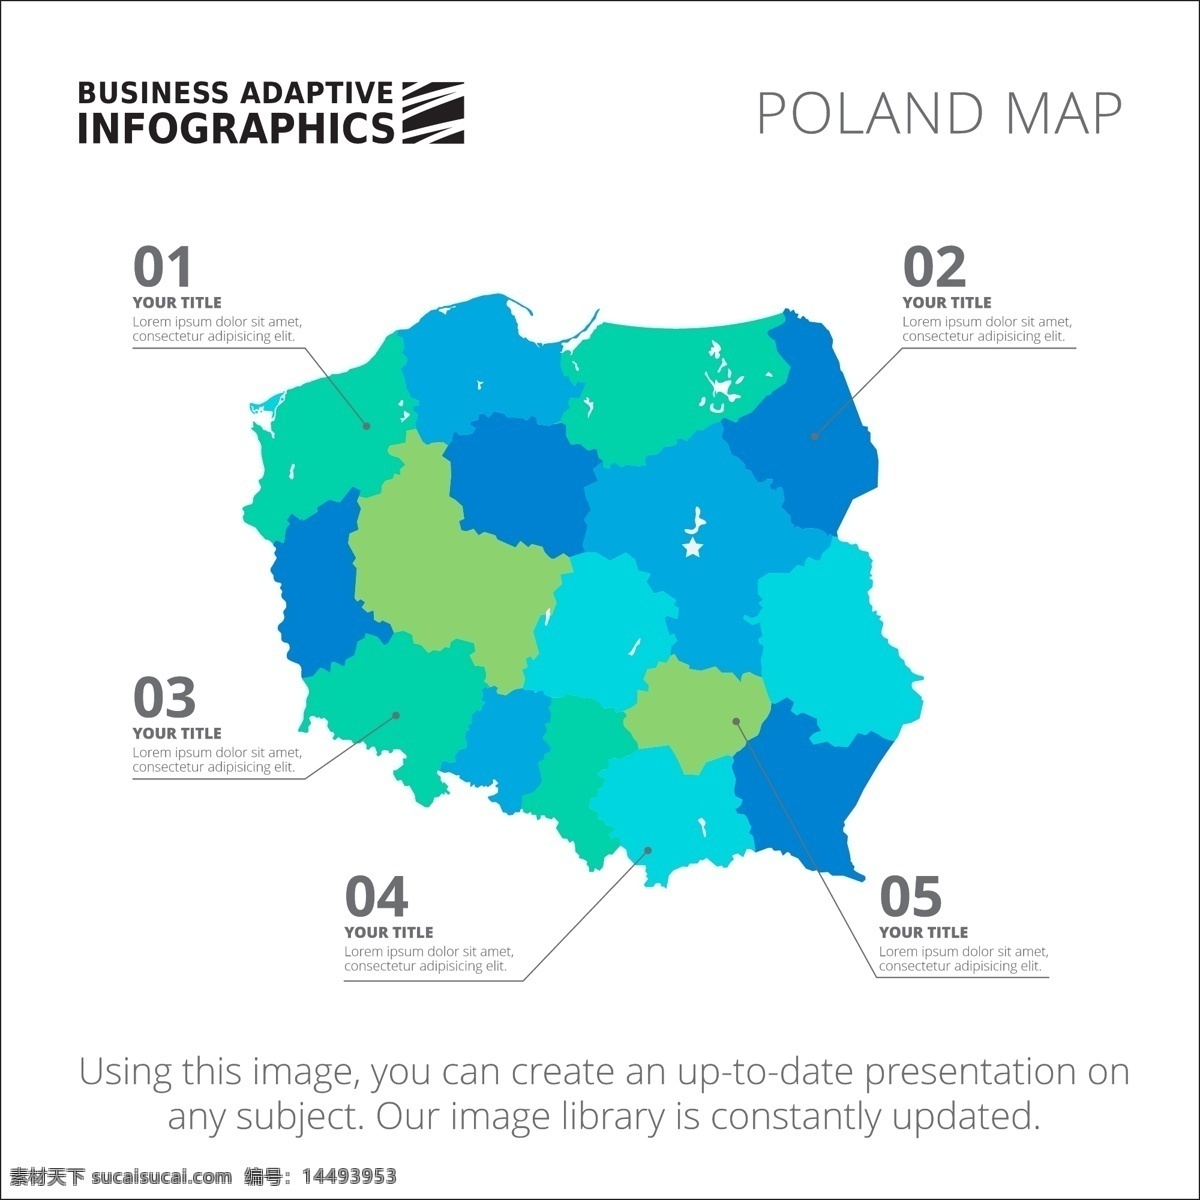 图表模板设计 图表 业务 地图 图形 模板 数字 信息 数据 要素 信息图表元素 色彩 商业图表 infography 图表模板 波兰